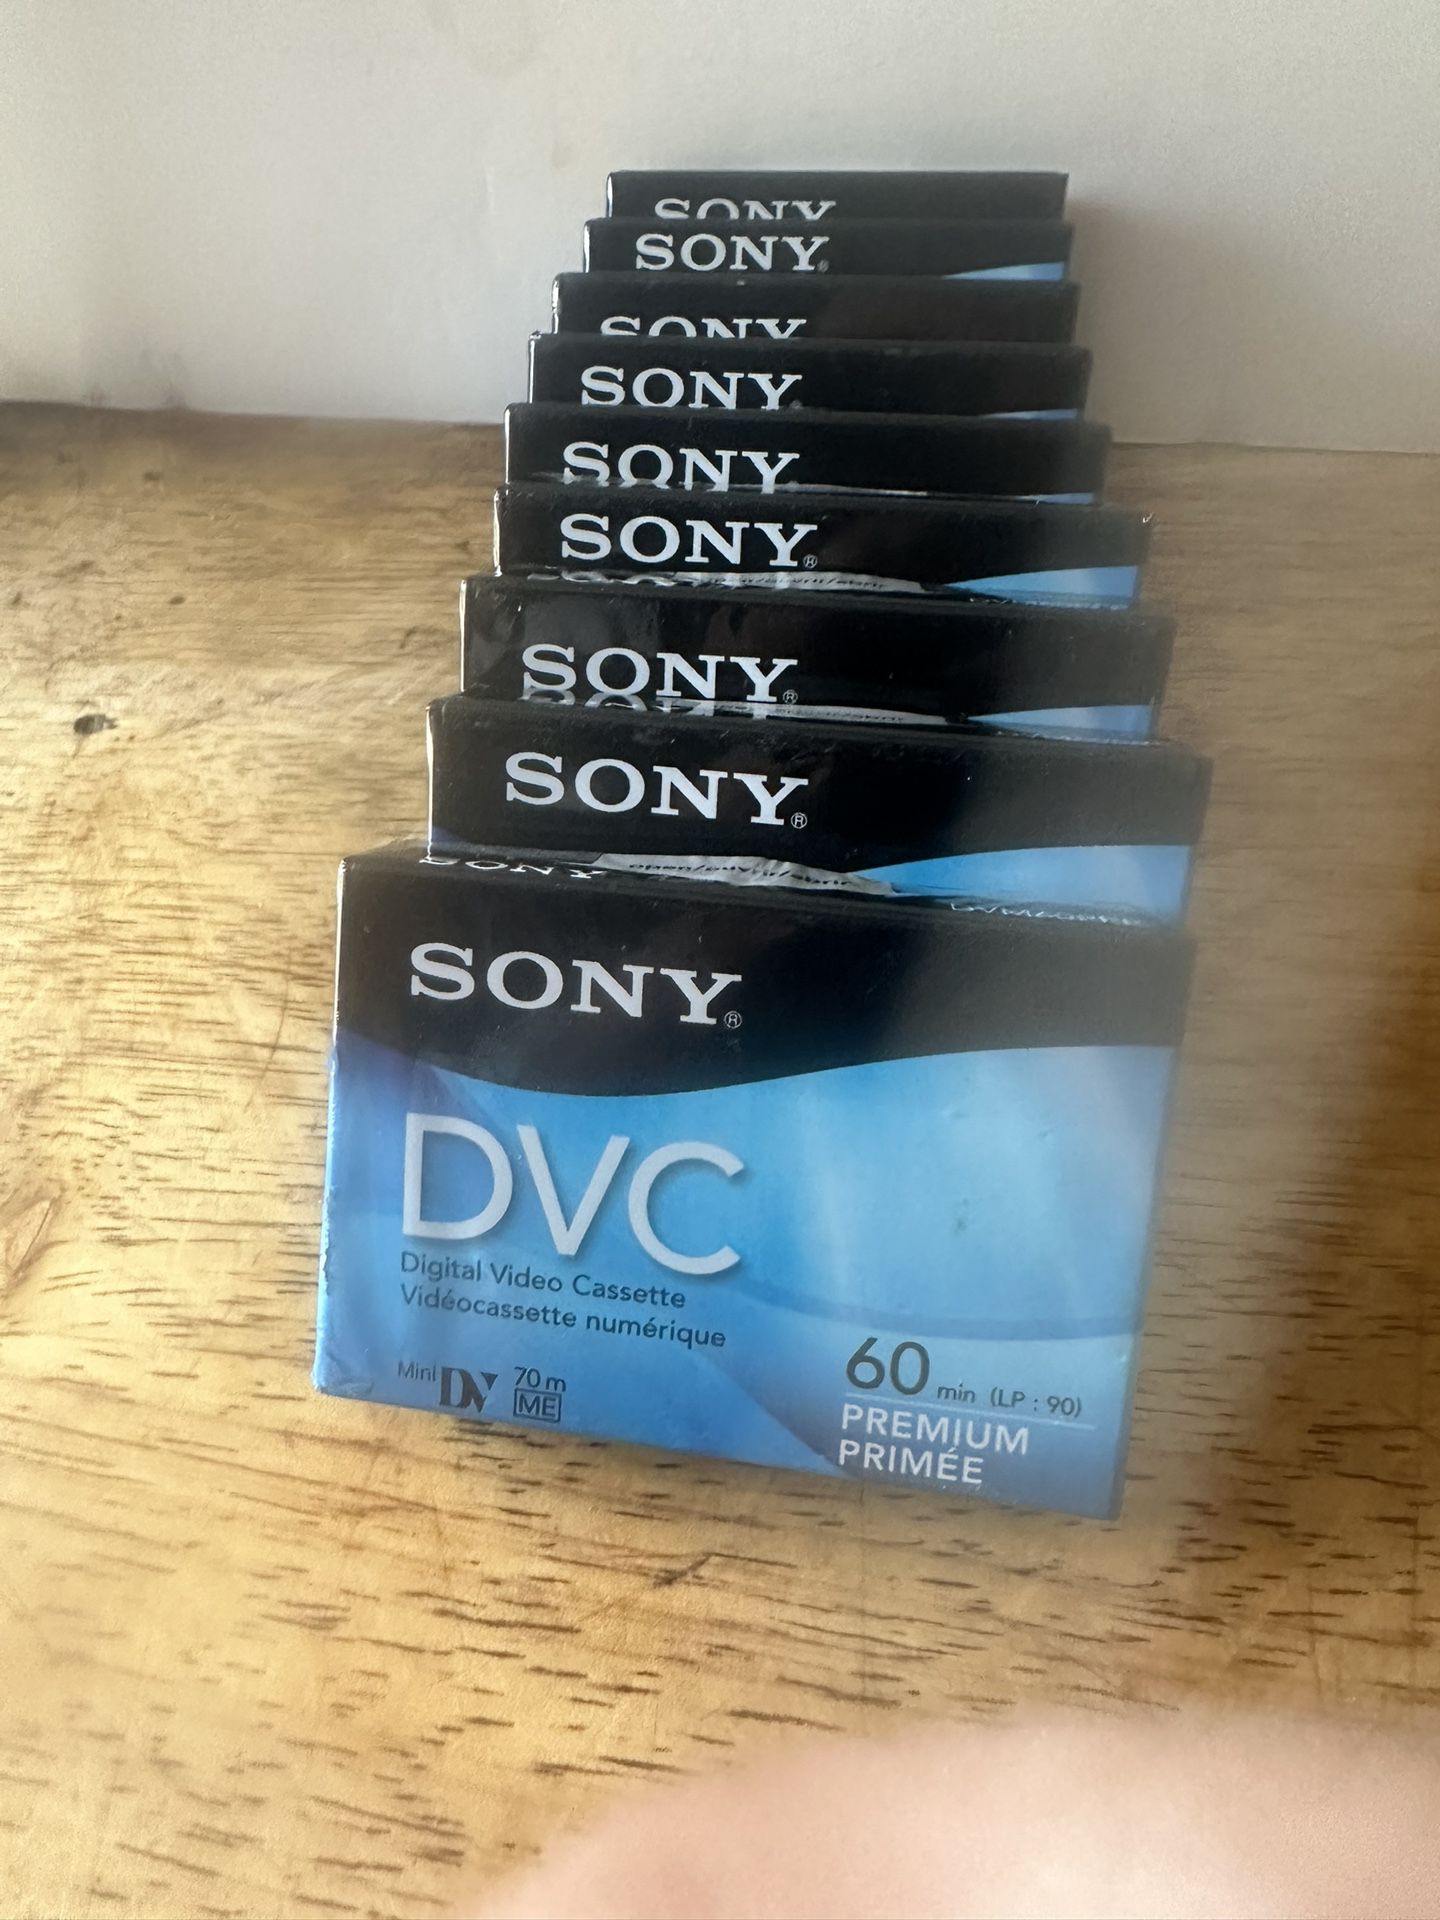  Cámara Video Cassette